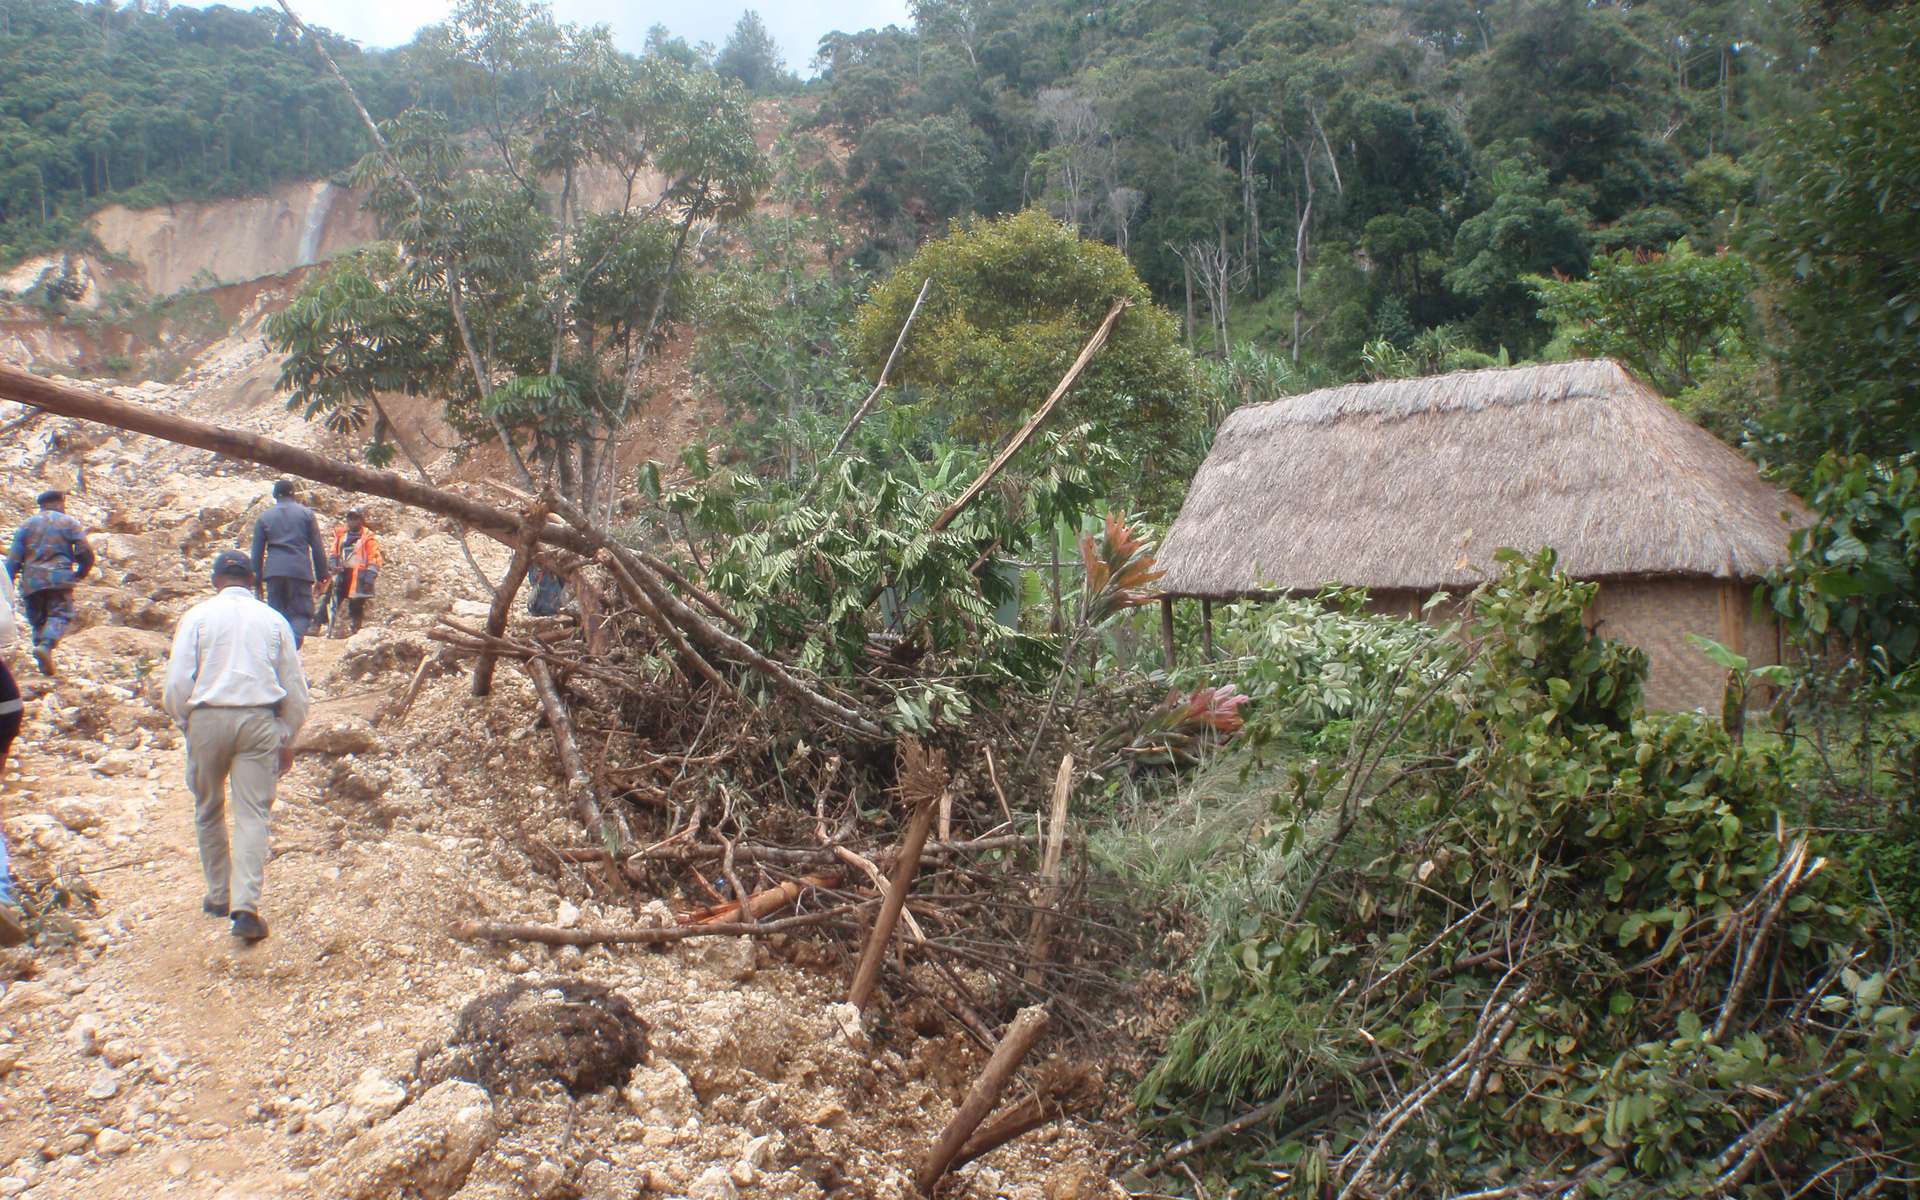 Glissement de terrain en Papouasie-Nouvelle-Guinée : comment expliquer cette terrible catastrophe ?